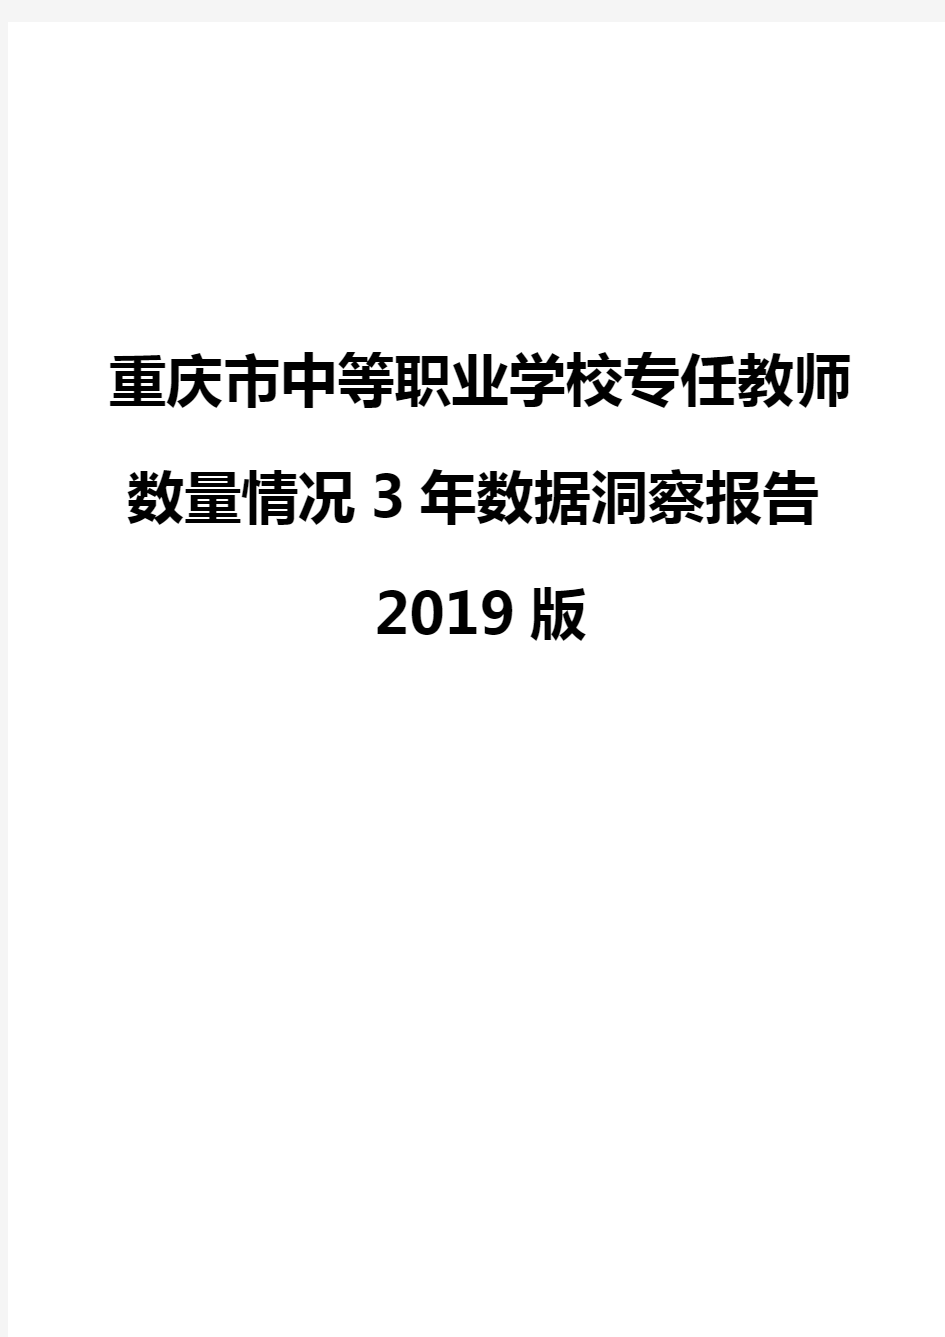 重庆市中等职业学校专任教师数量情况3年数据洞察报告2019版